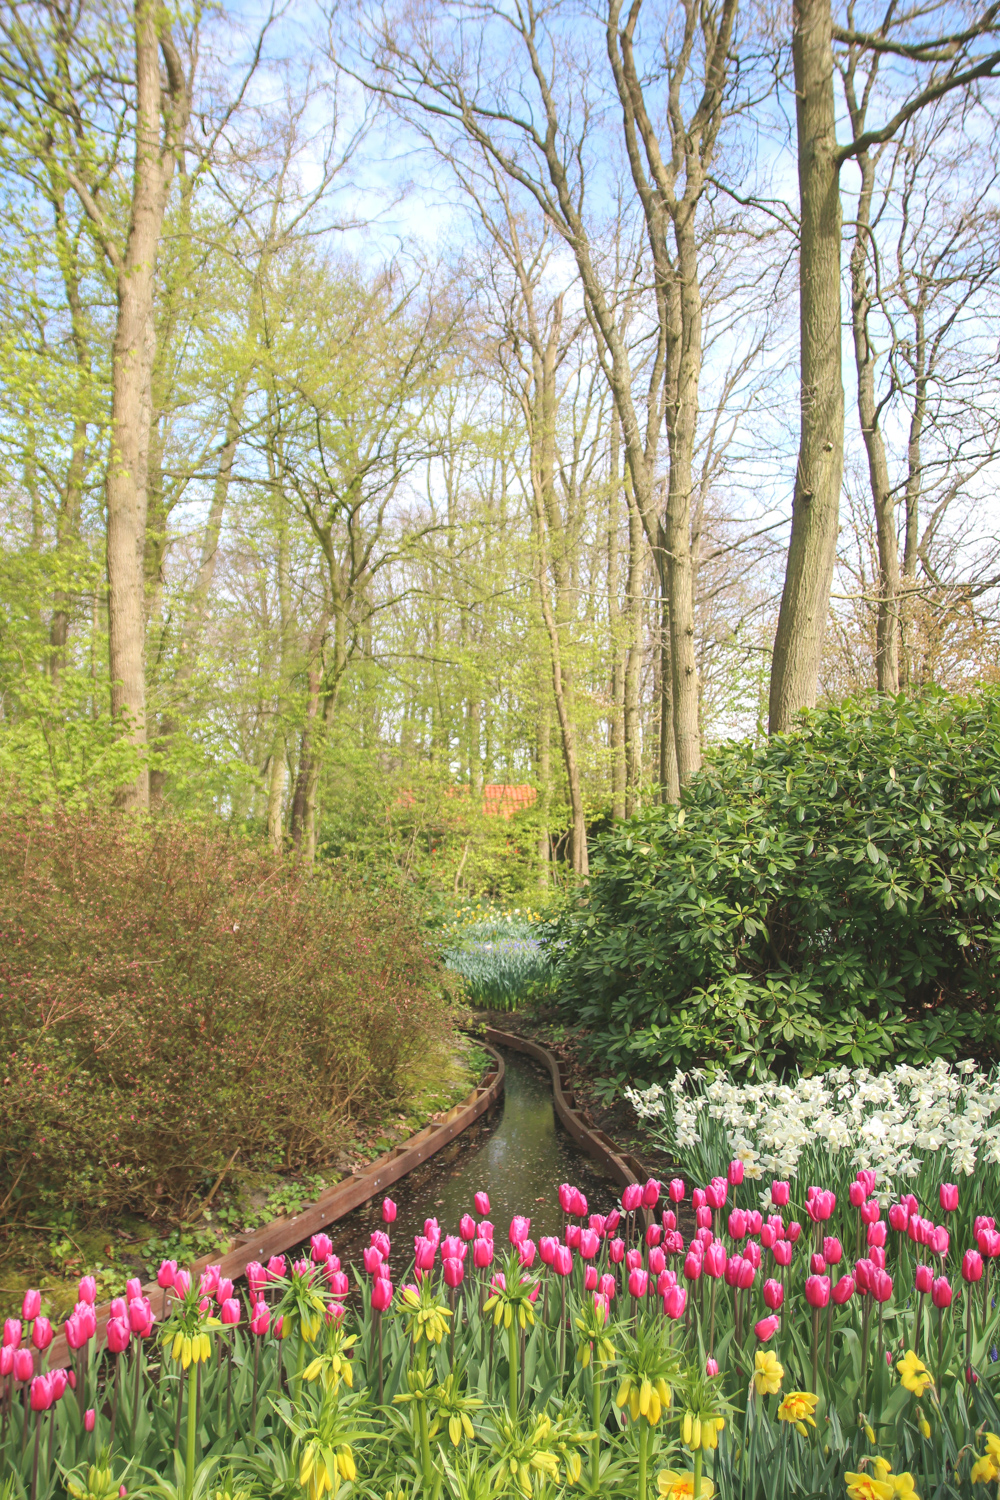 Flower Displays at Keukenhof Gardens, Holland